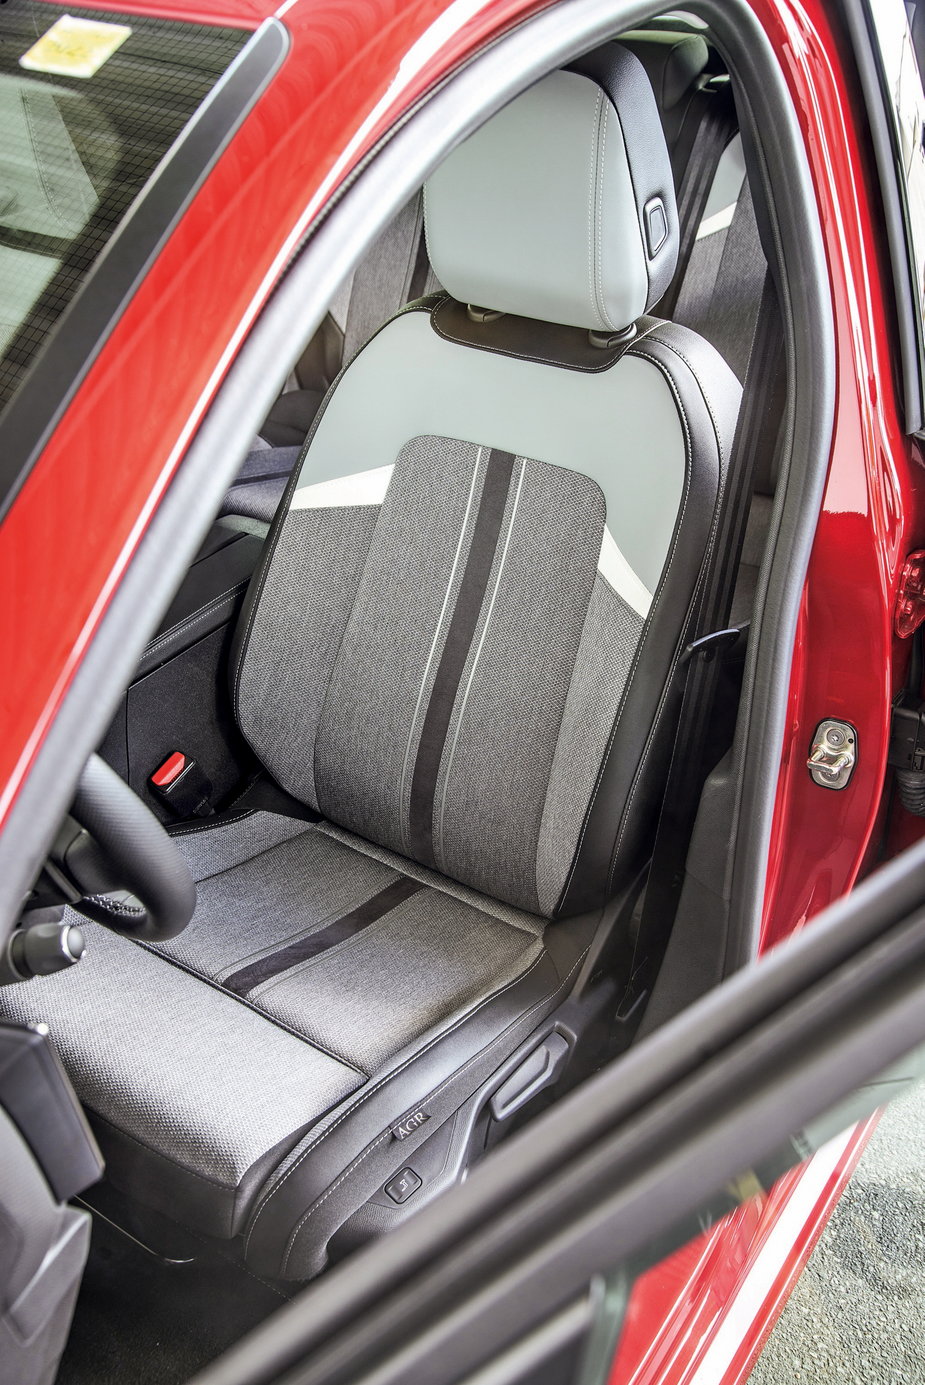 Opel Astra 2022 - certyfikowane przednie fotele: bardzo wygodne, z przyjazną dla pleców konstrukcją oparcia.